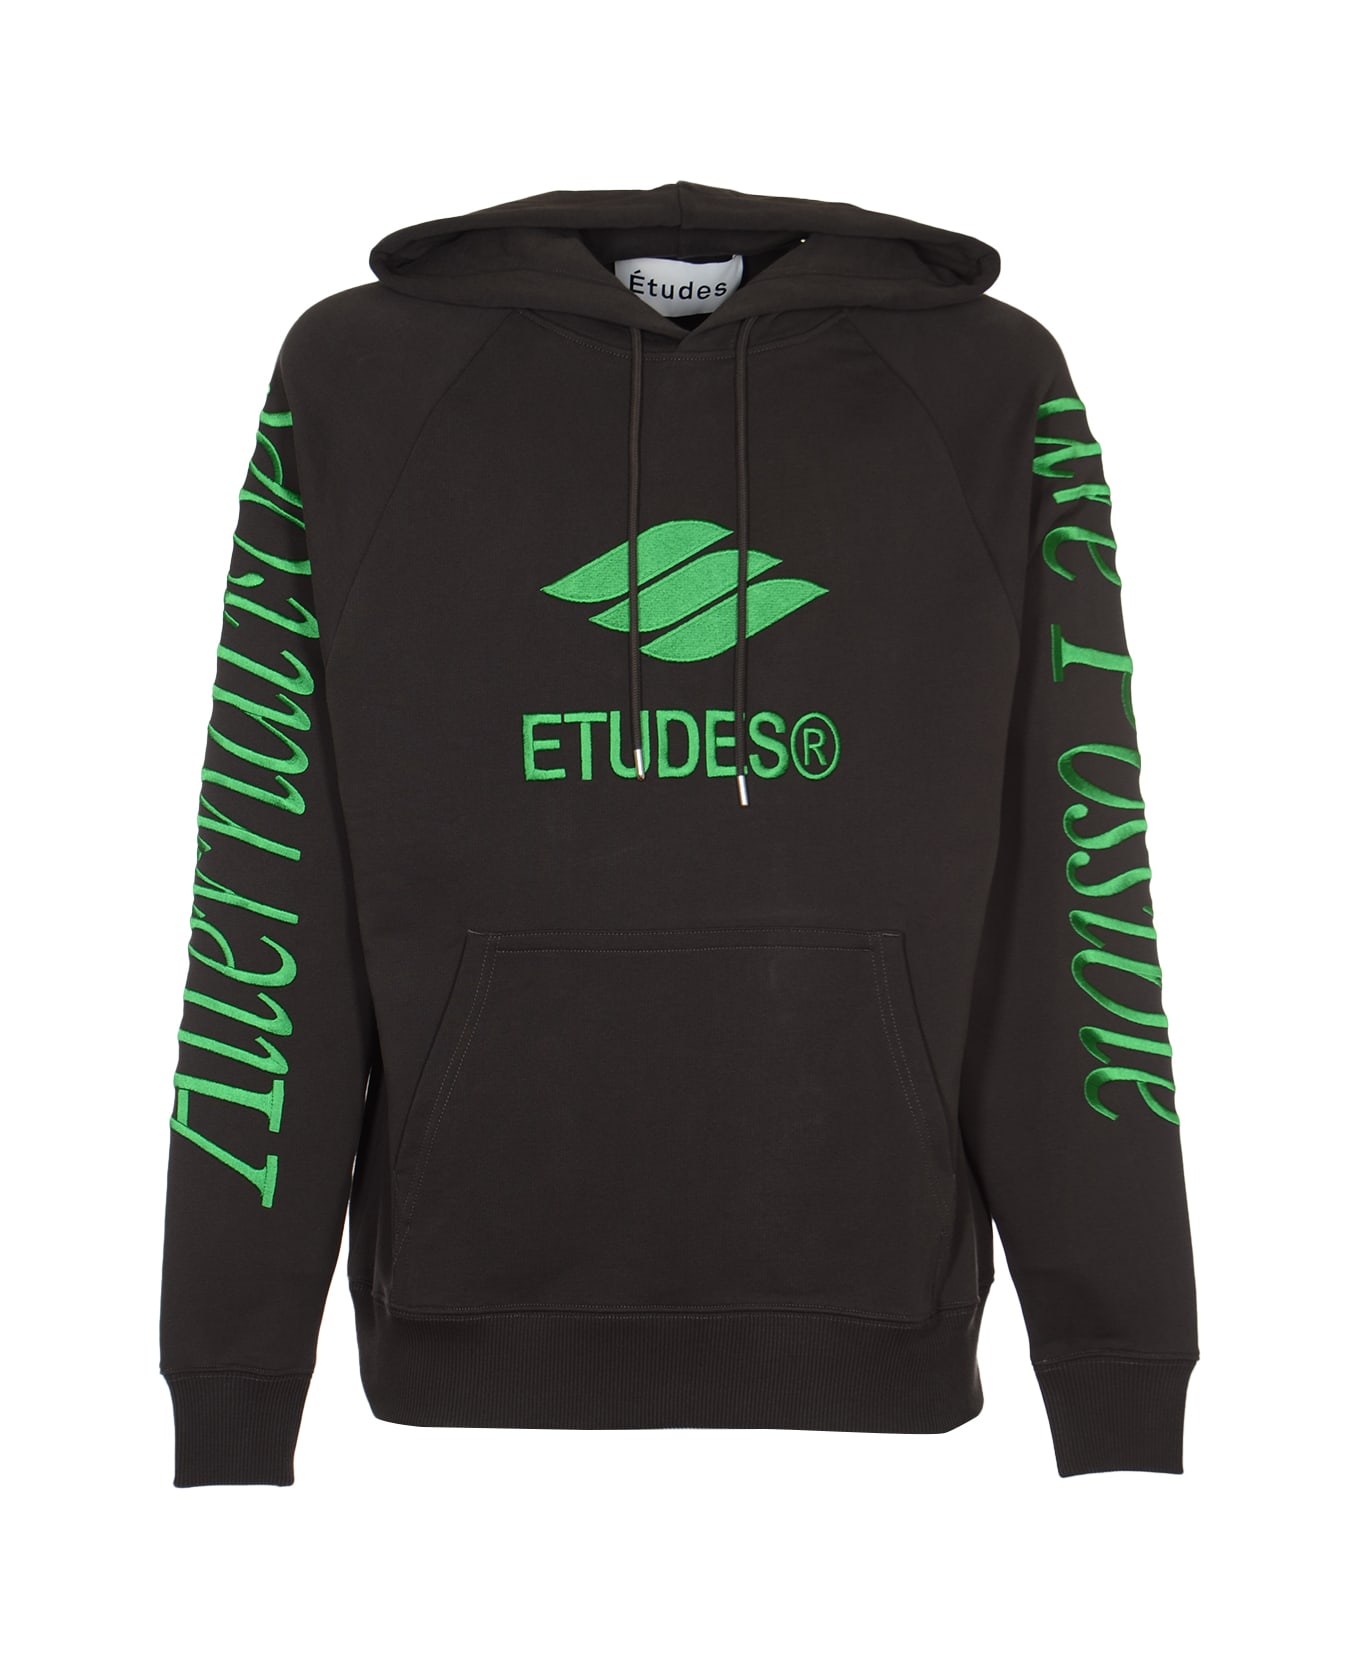 Études Racing Eco Sweatshirt - Nero